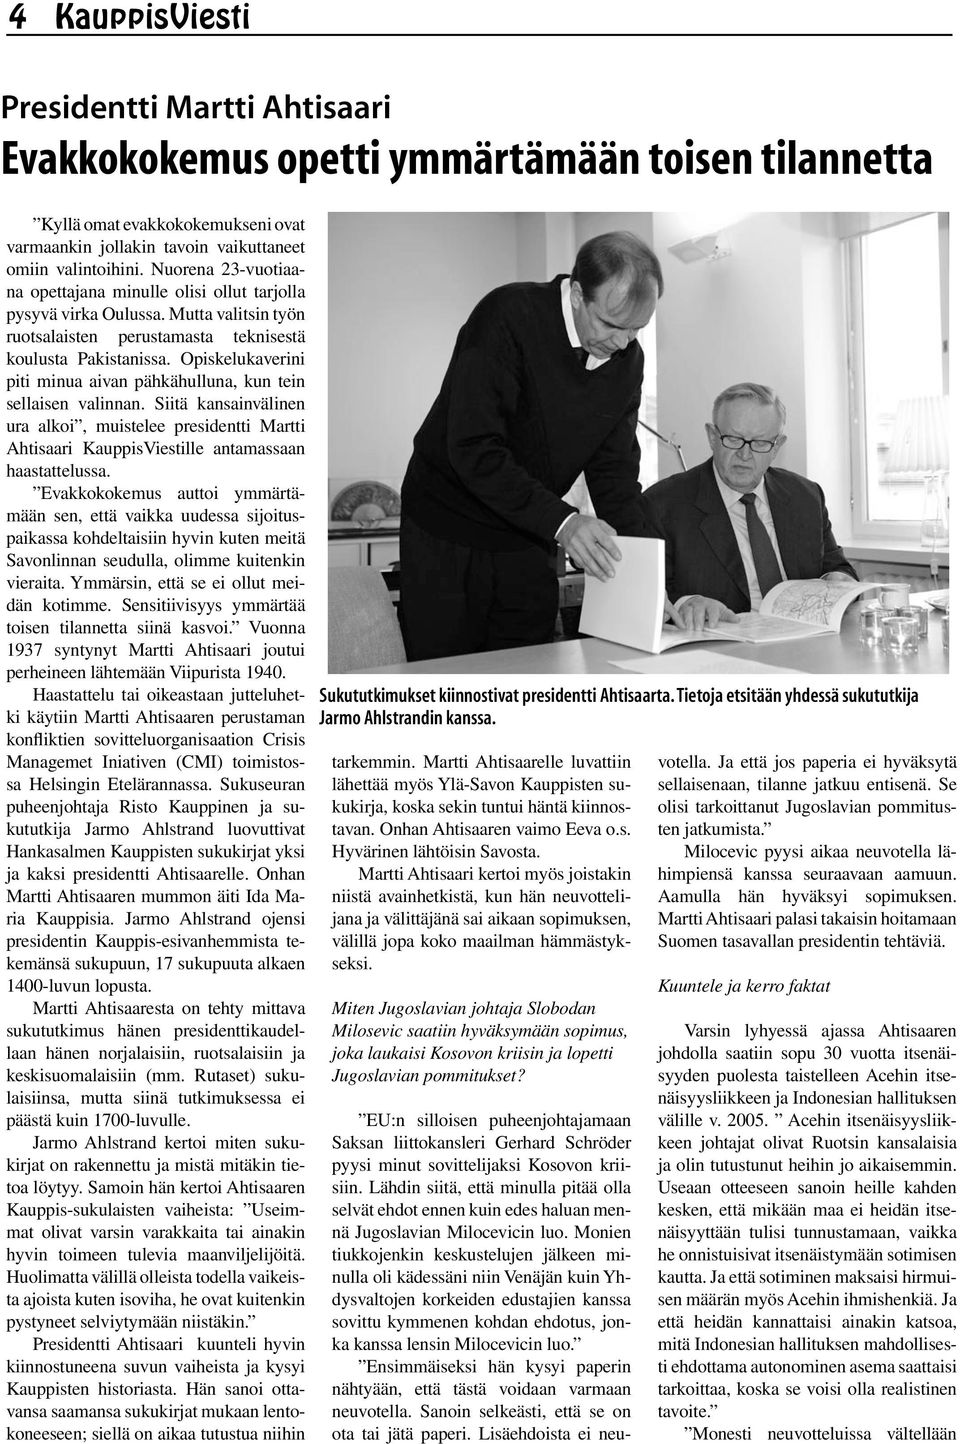 Opiskelukaverini piti minua aivan pähkähulluna, kun tein sellaisen valinnan. Siitä kansainvälinen ura alkoi, muistelee presidentti Martti Ahtisaari KauppisViestille antamassaan haastattelussa.